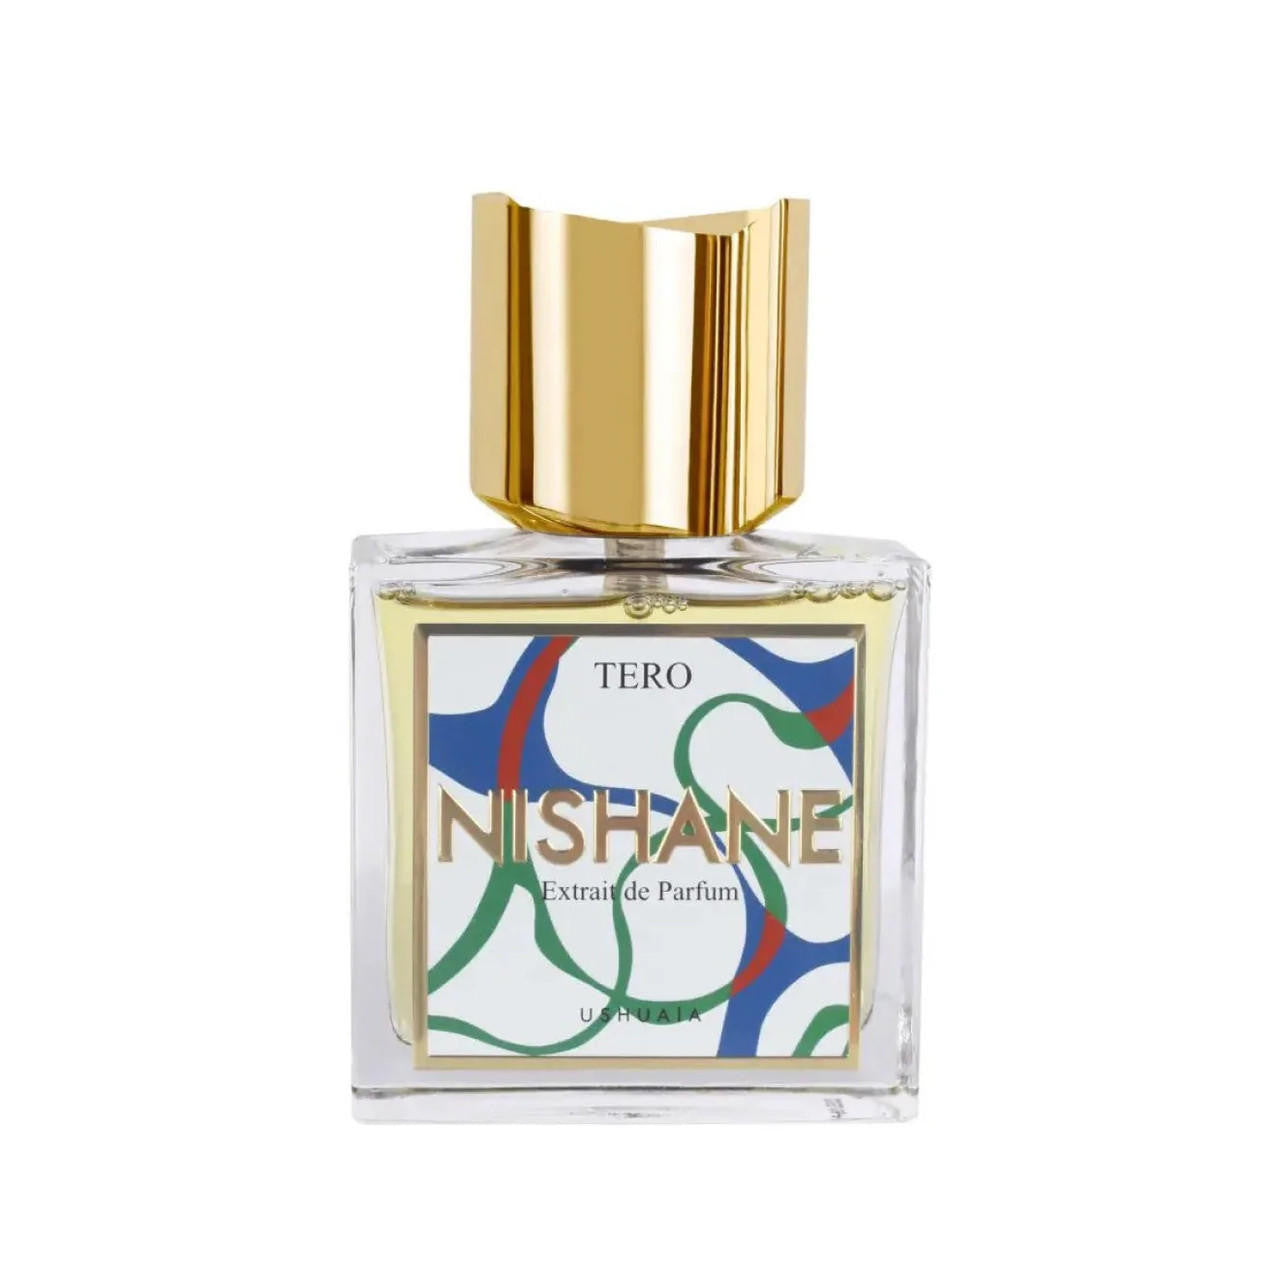  Nishane TERO Extrait de Parfum 